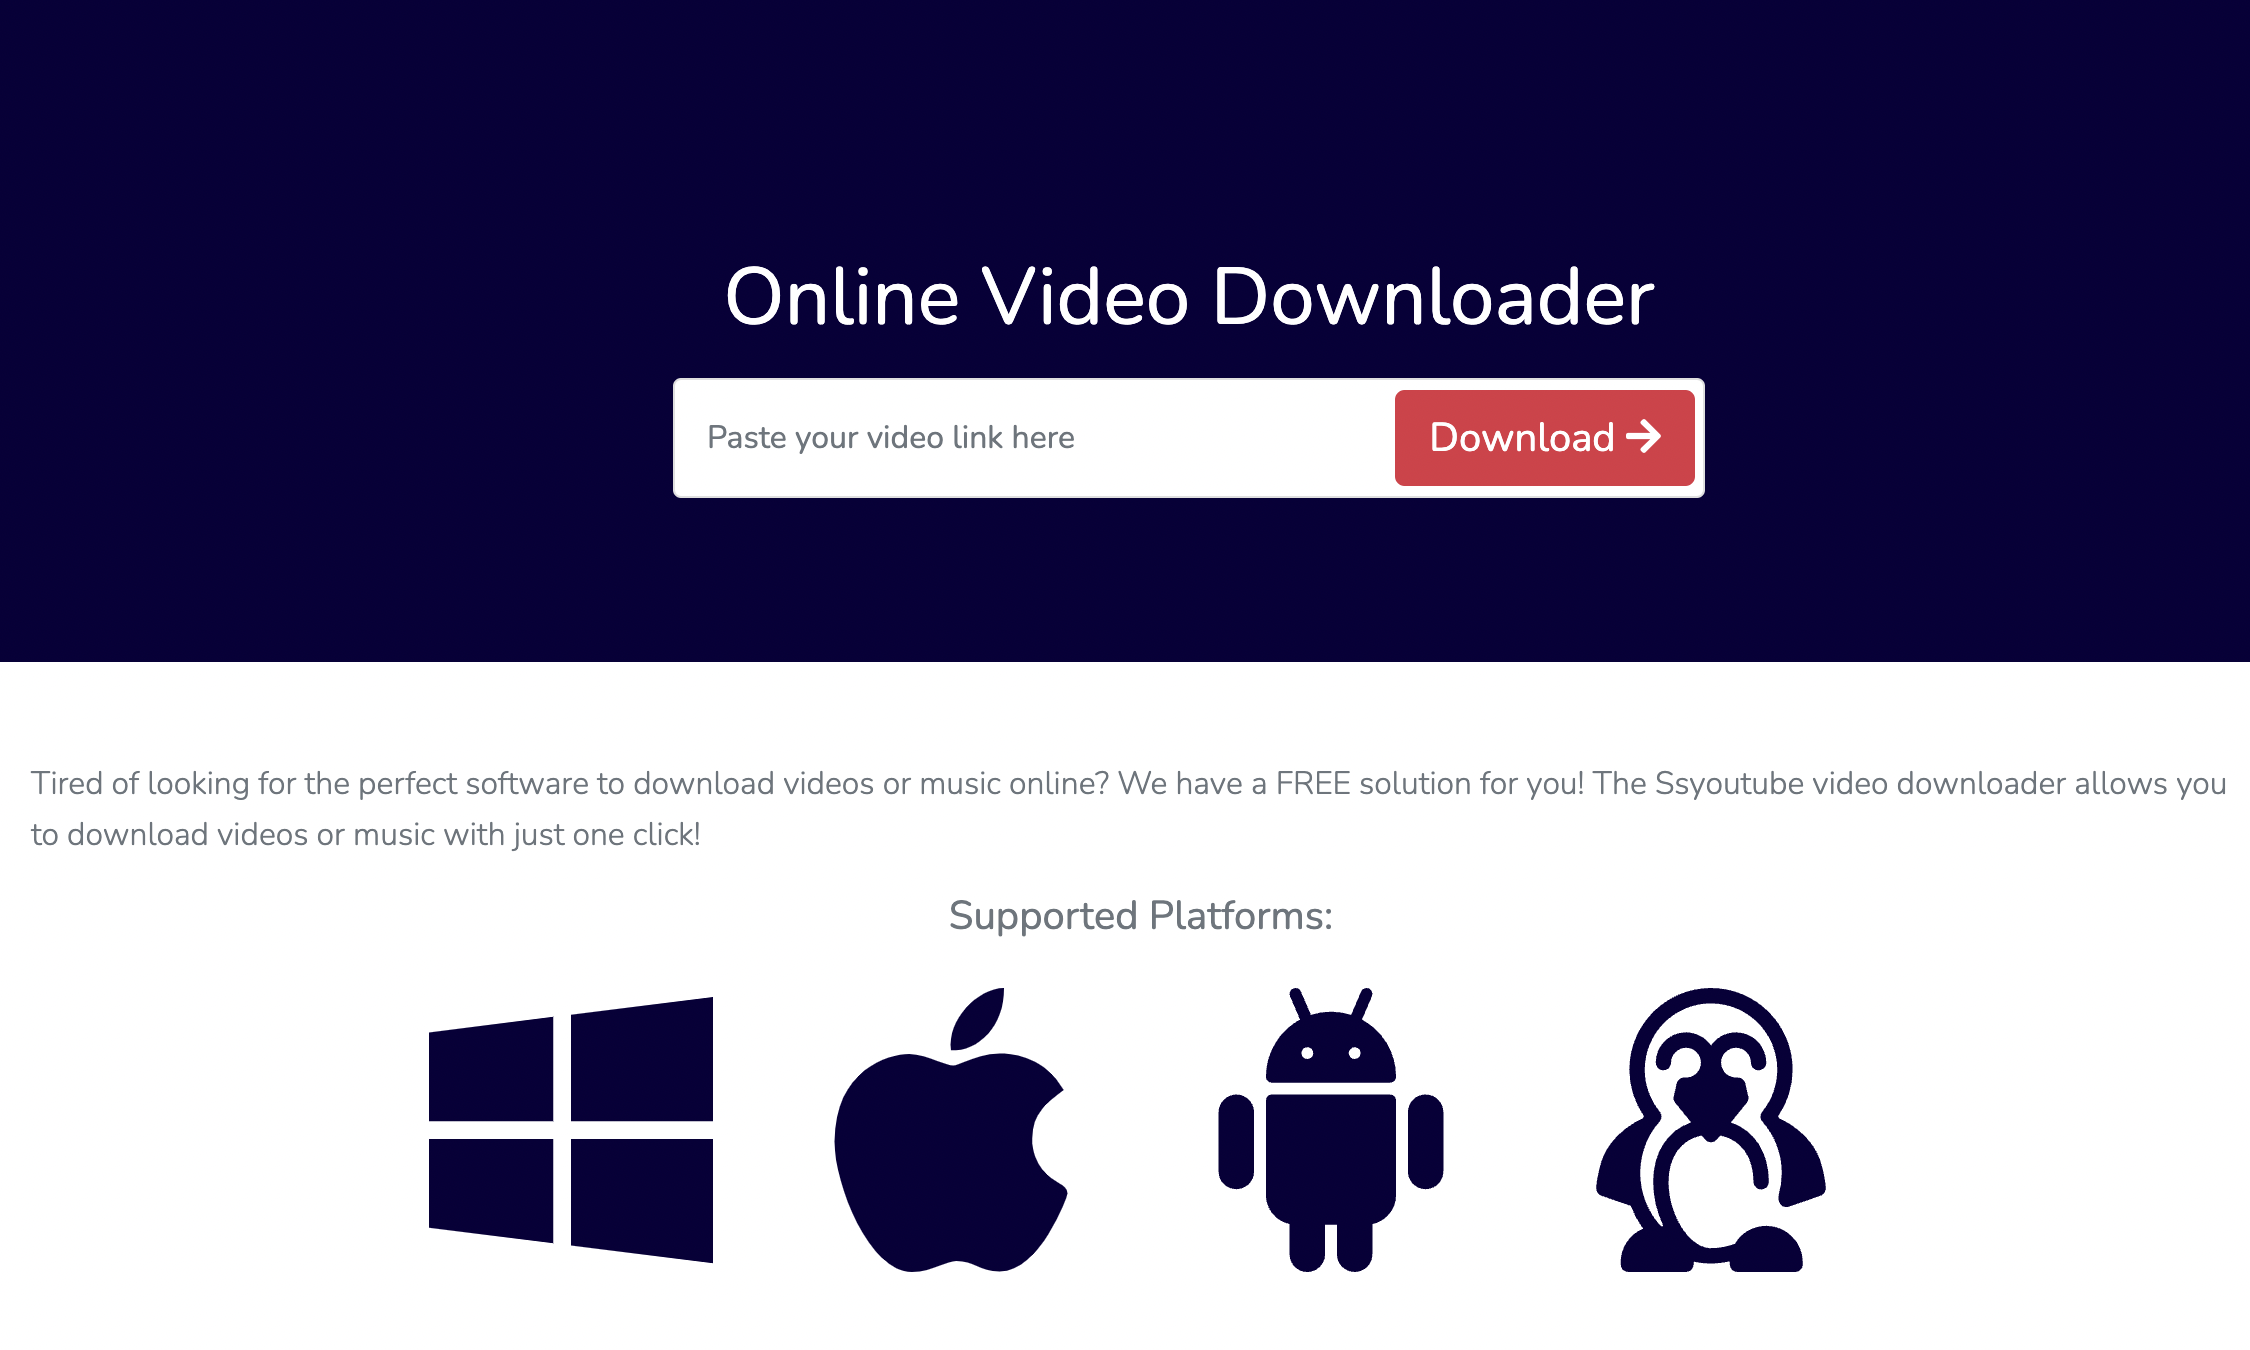 SSYoutube - Online Video Downloader